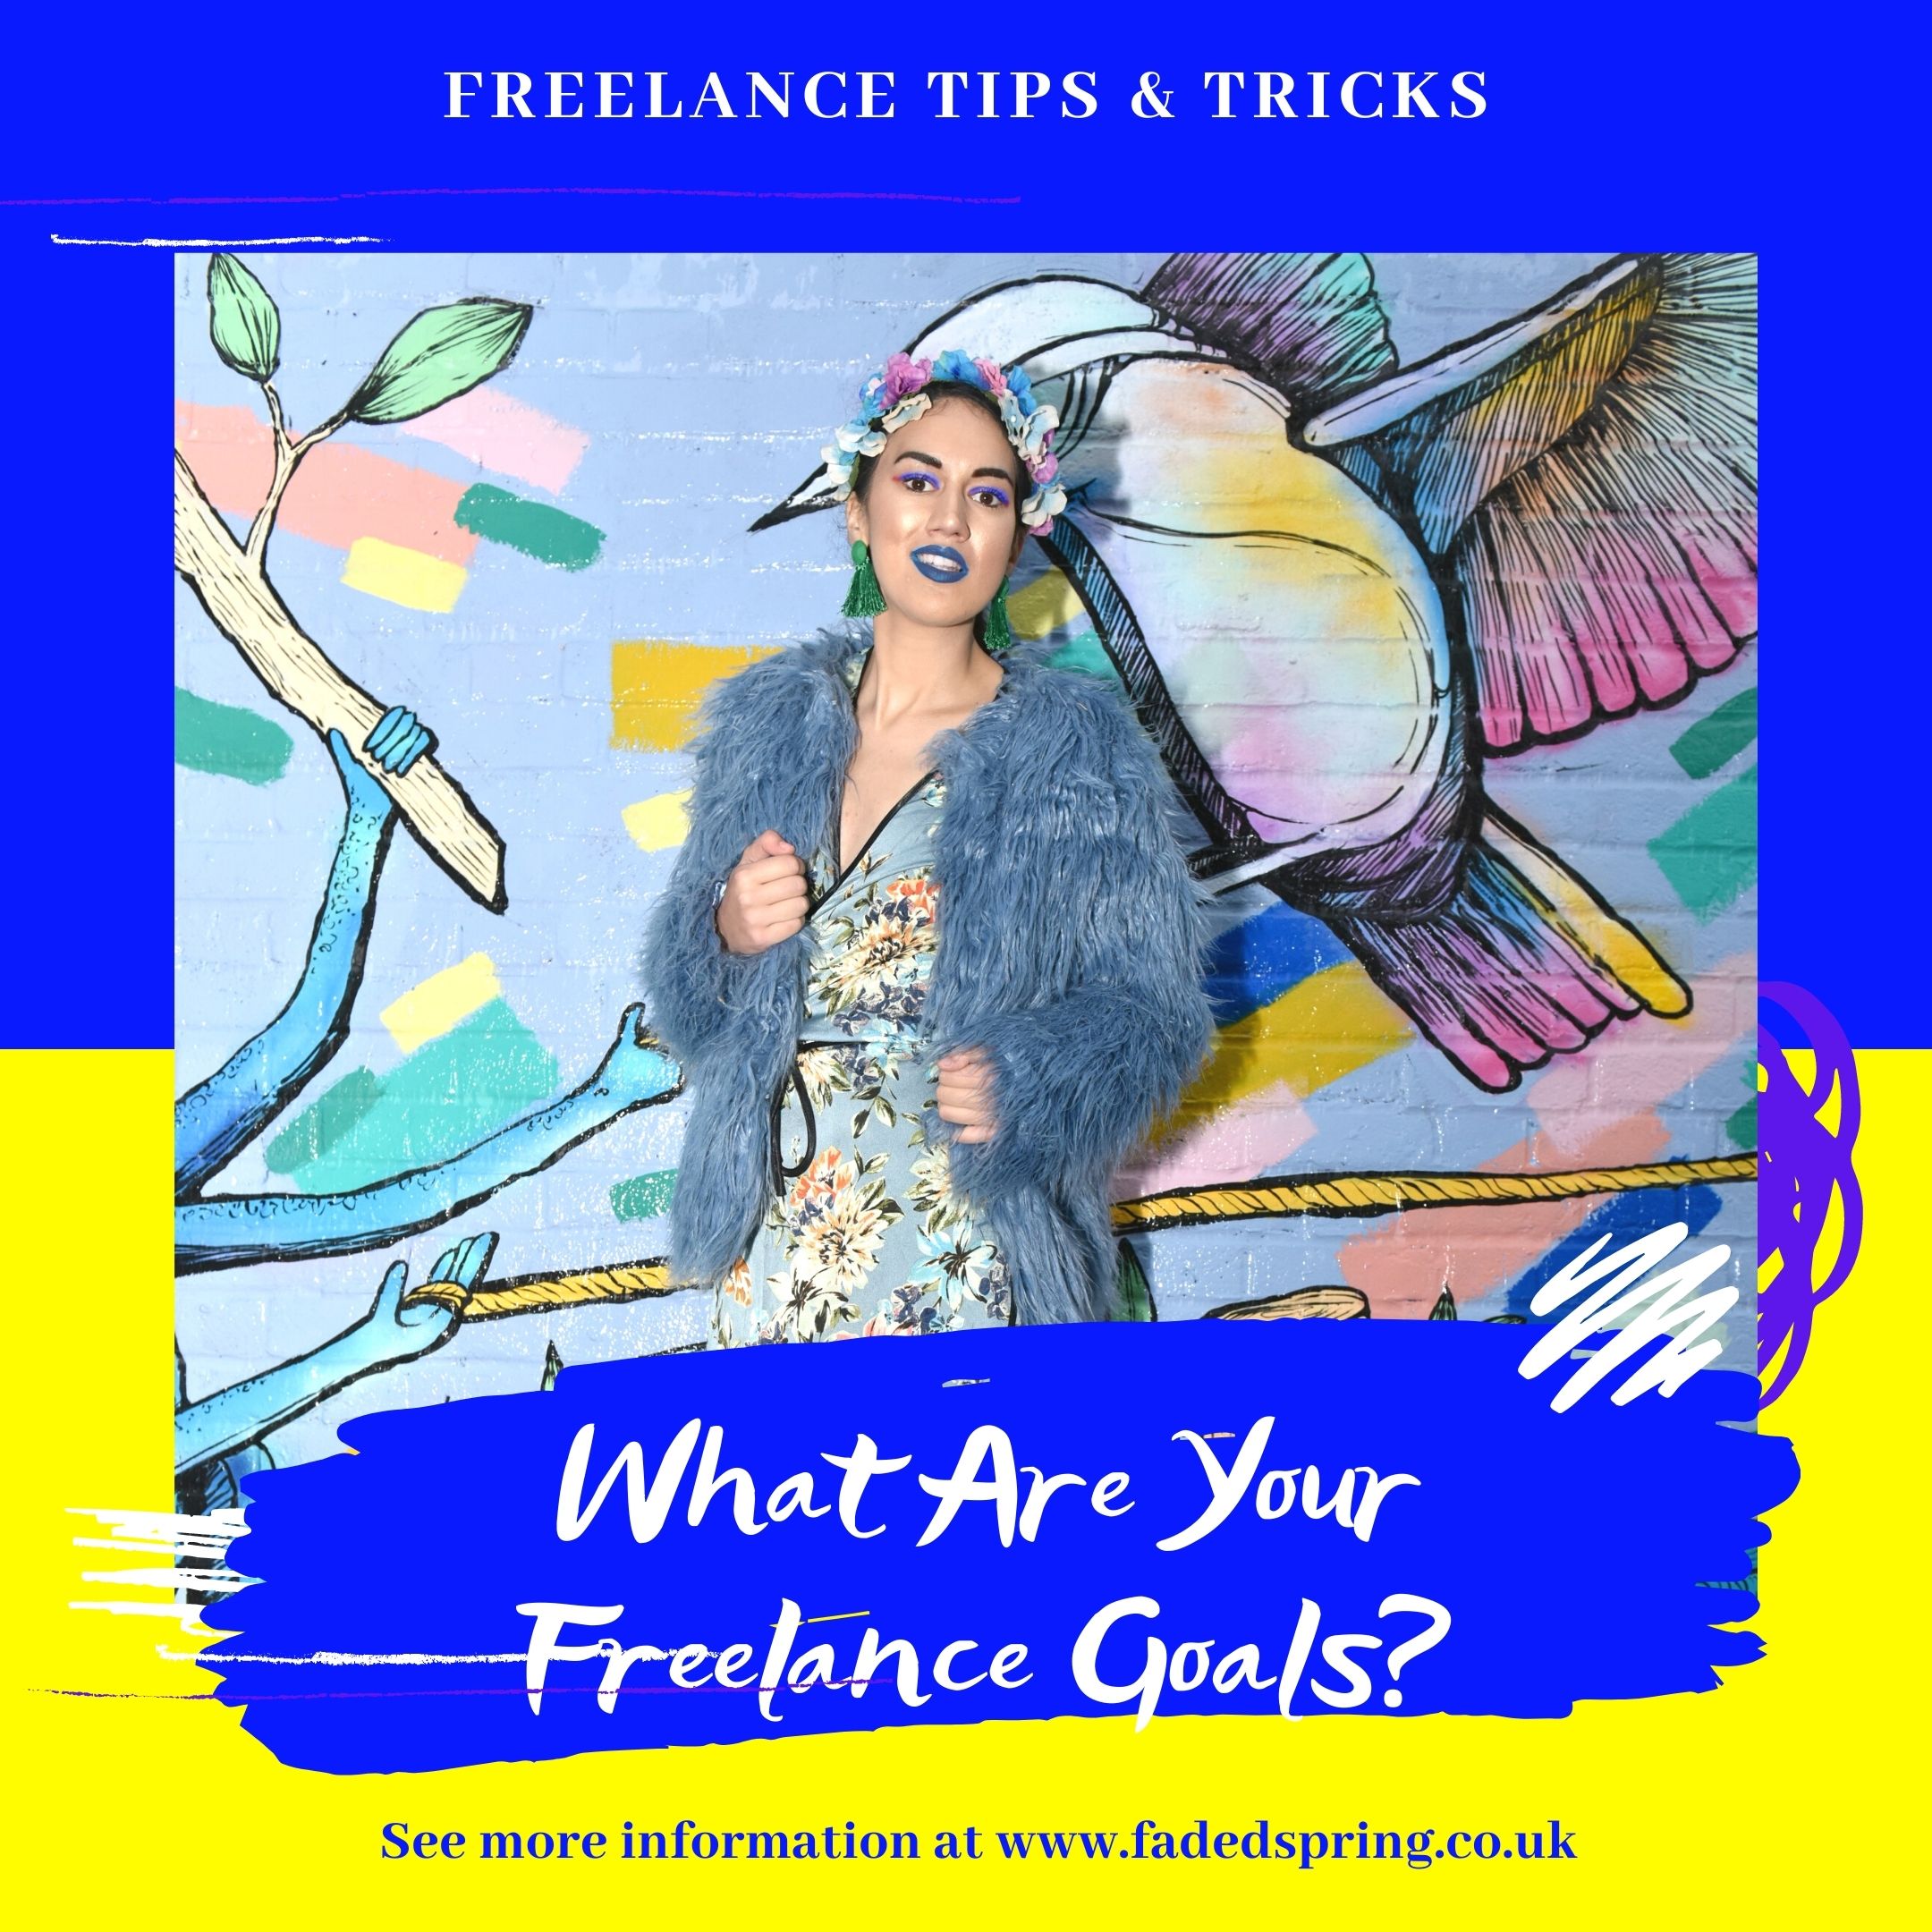 <img src="freelance.jpg" alt="freelance goals checklist graphic"/> 